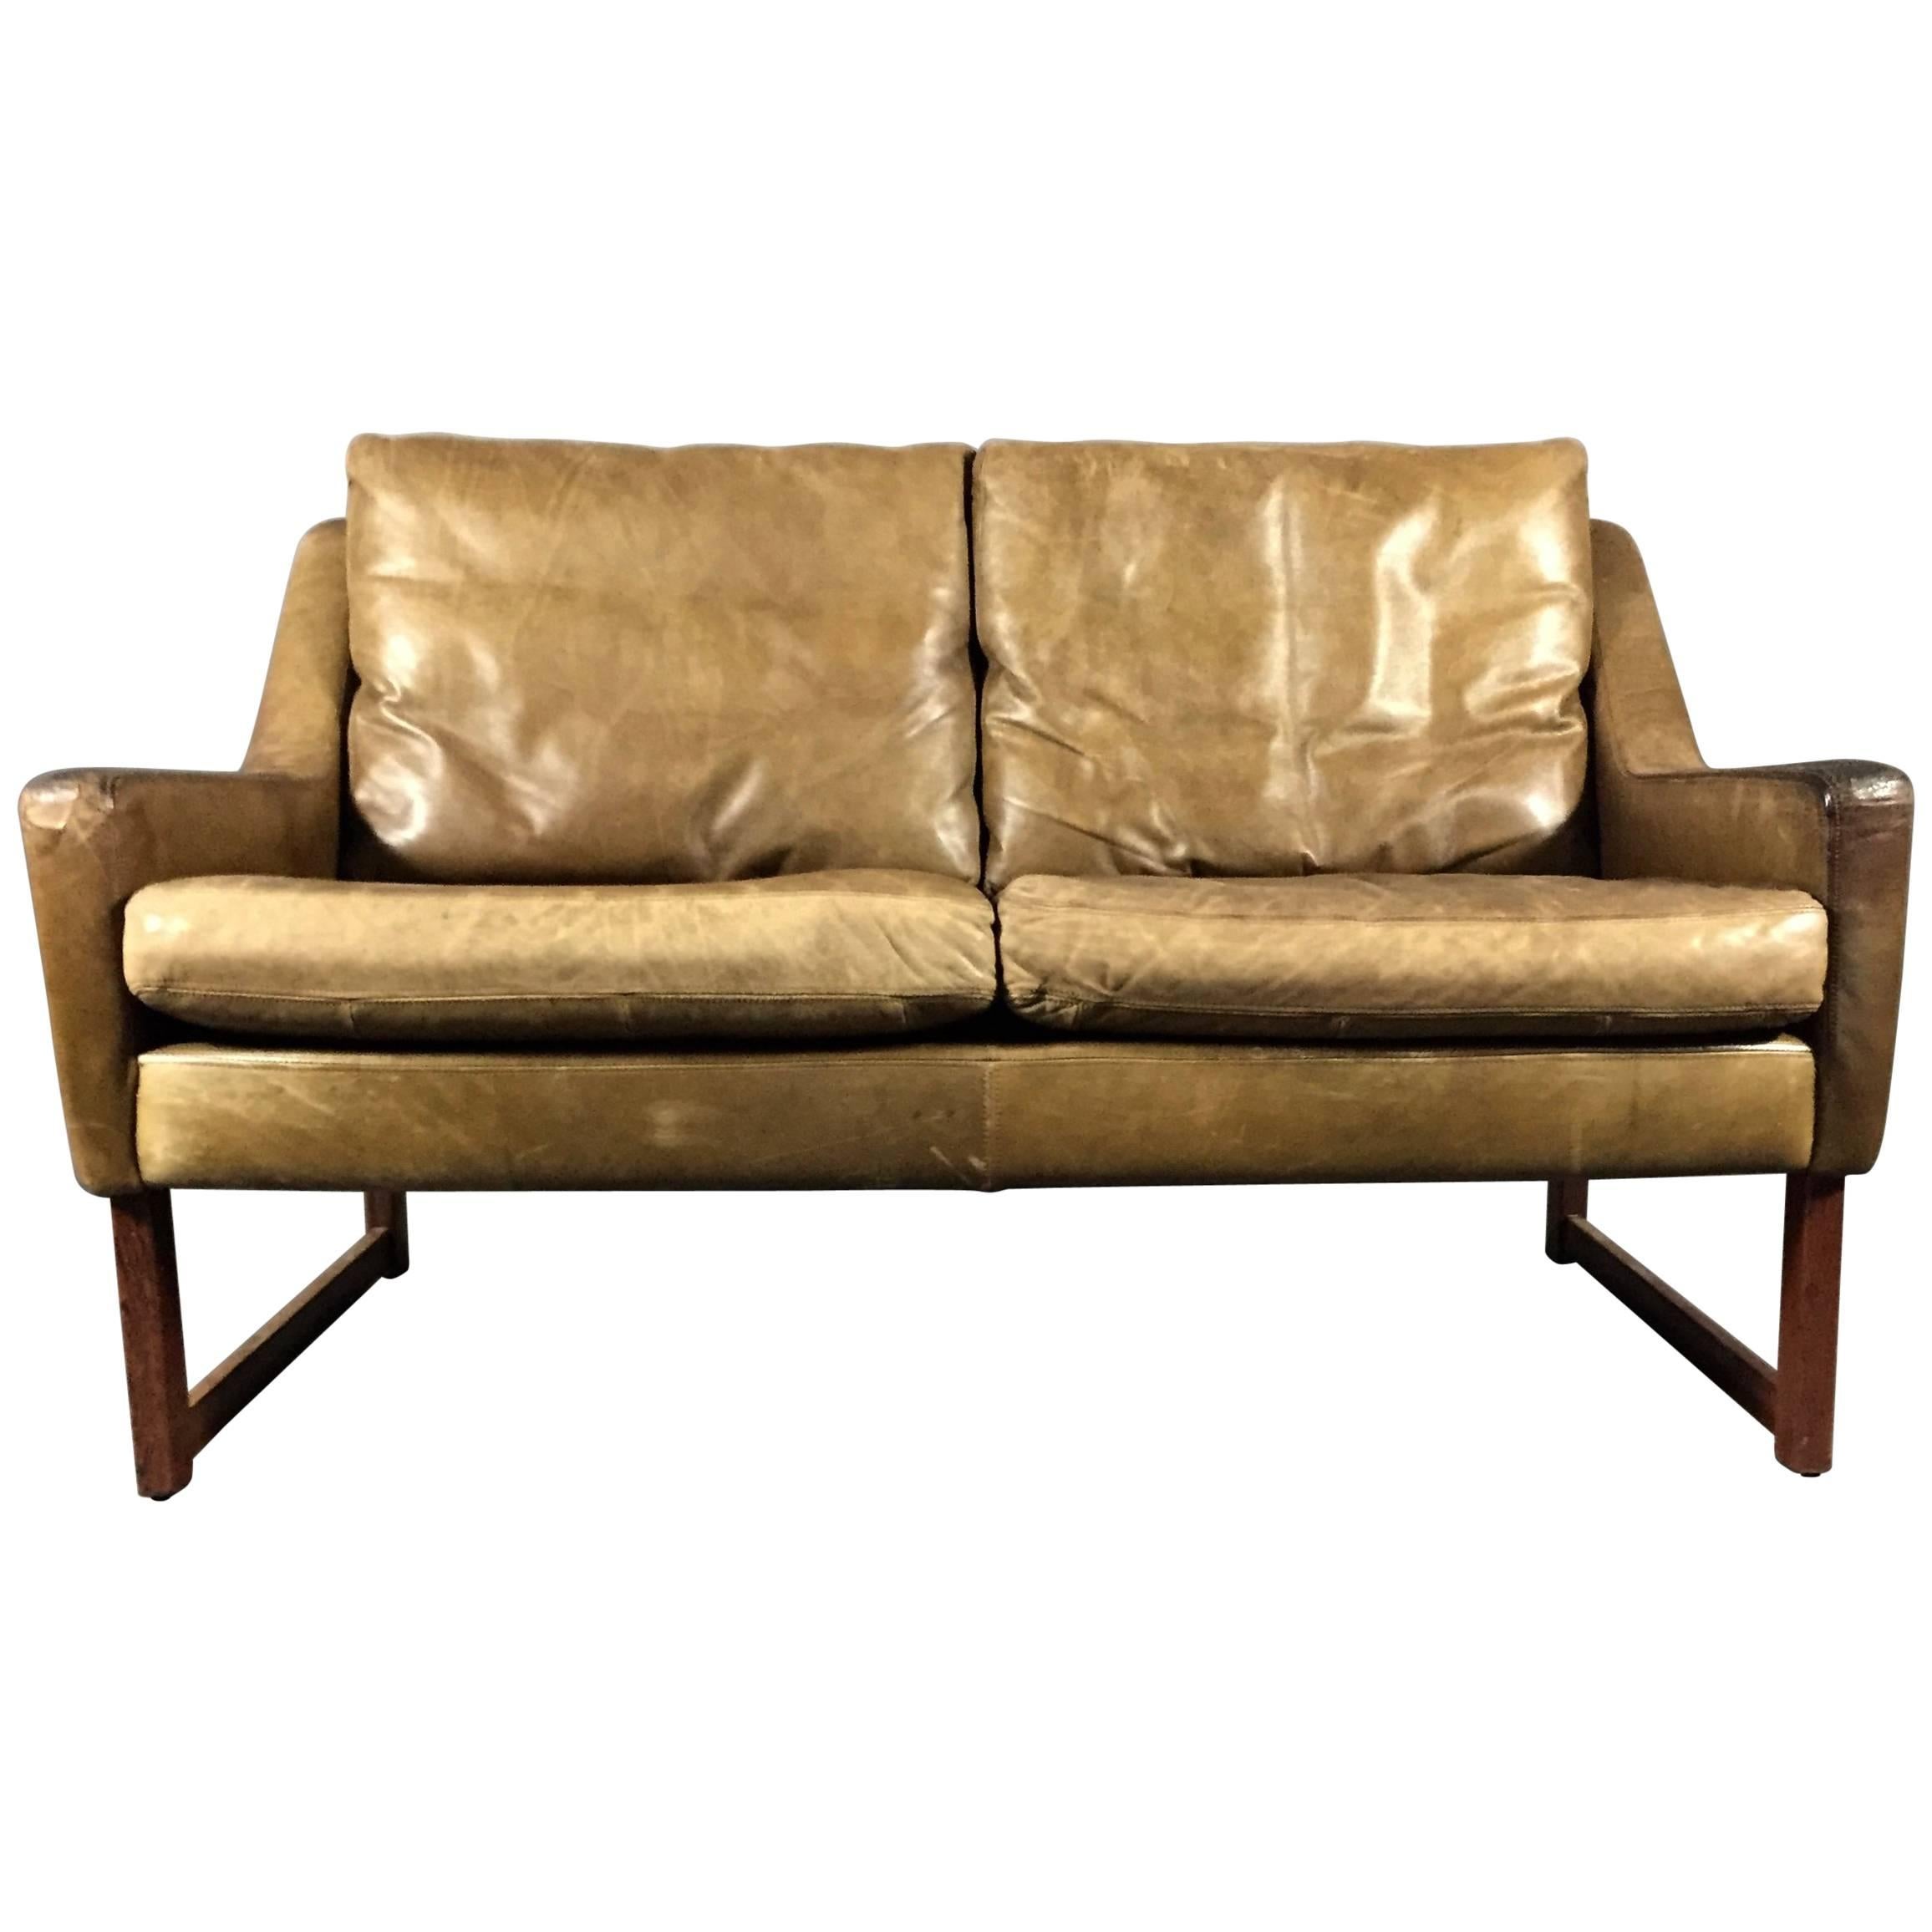 Rudolf B. Glatzel Two-Seat Leather Sofa for Kill International, 1960s, Germany